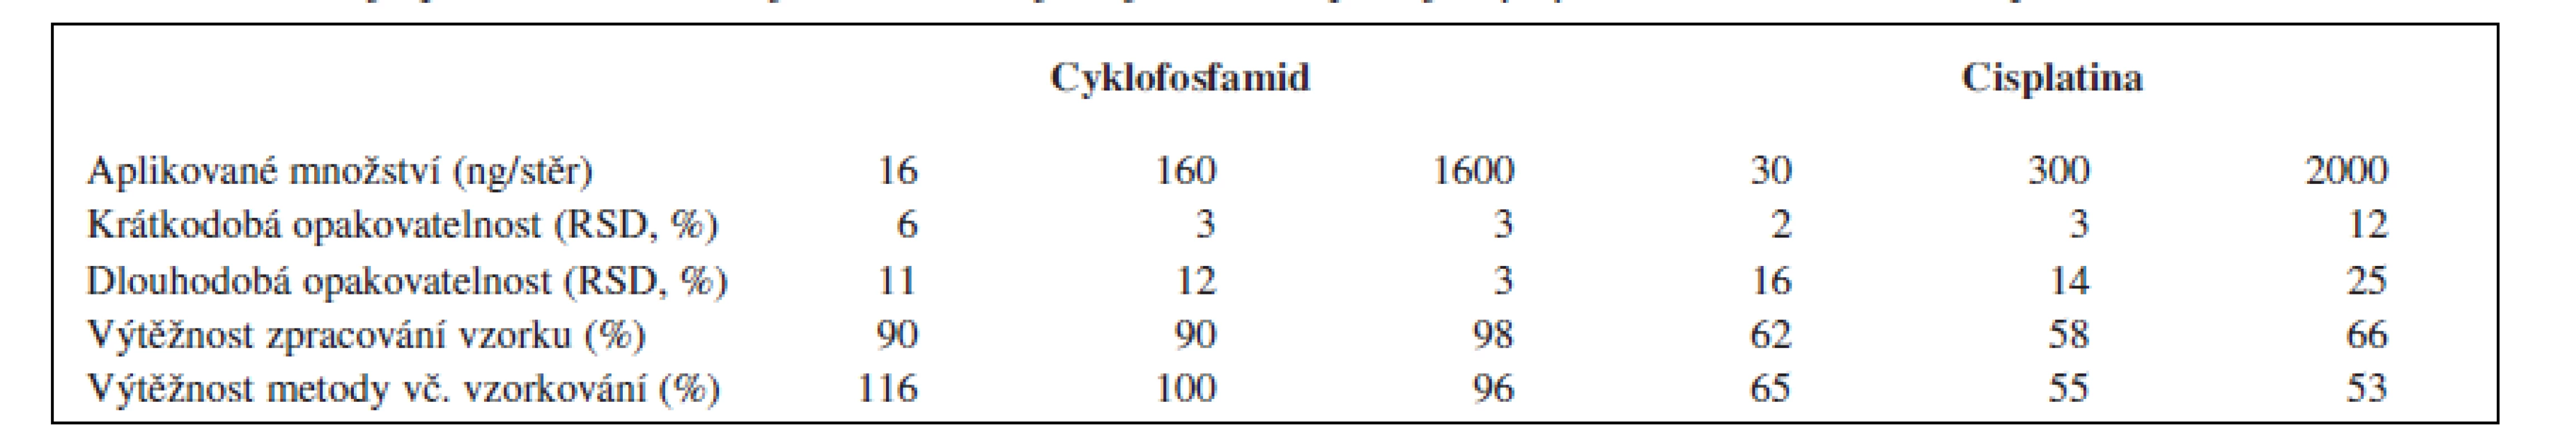 Parametry opakovatelnosti a výtěžnosti analytických metod pro cyklofosfamid (HPLC/MS) a cisplatinu (ICP/MS)